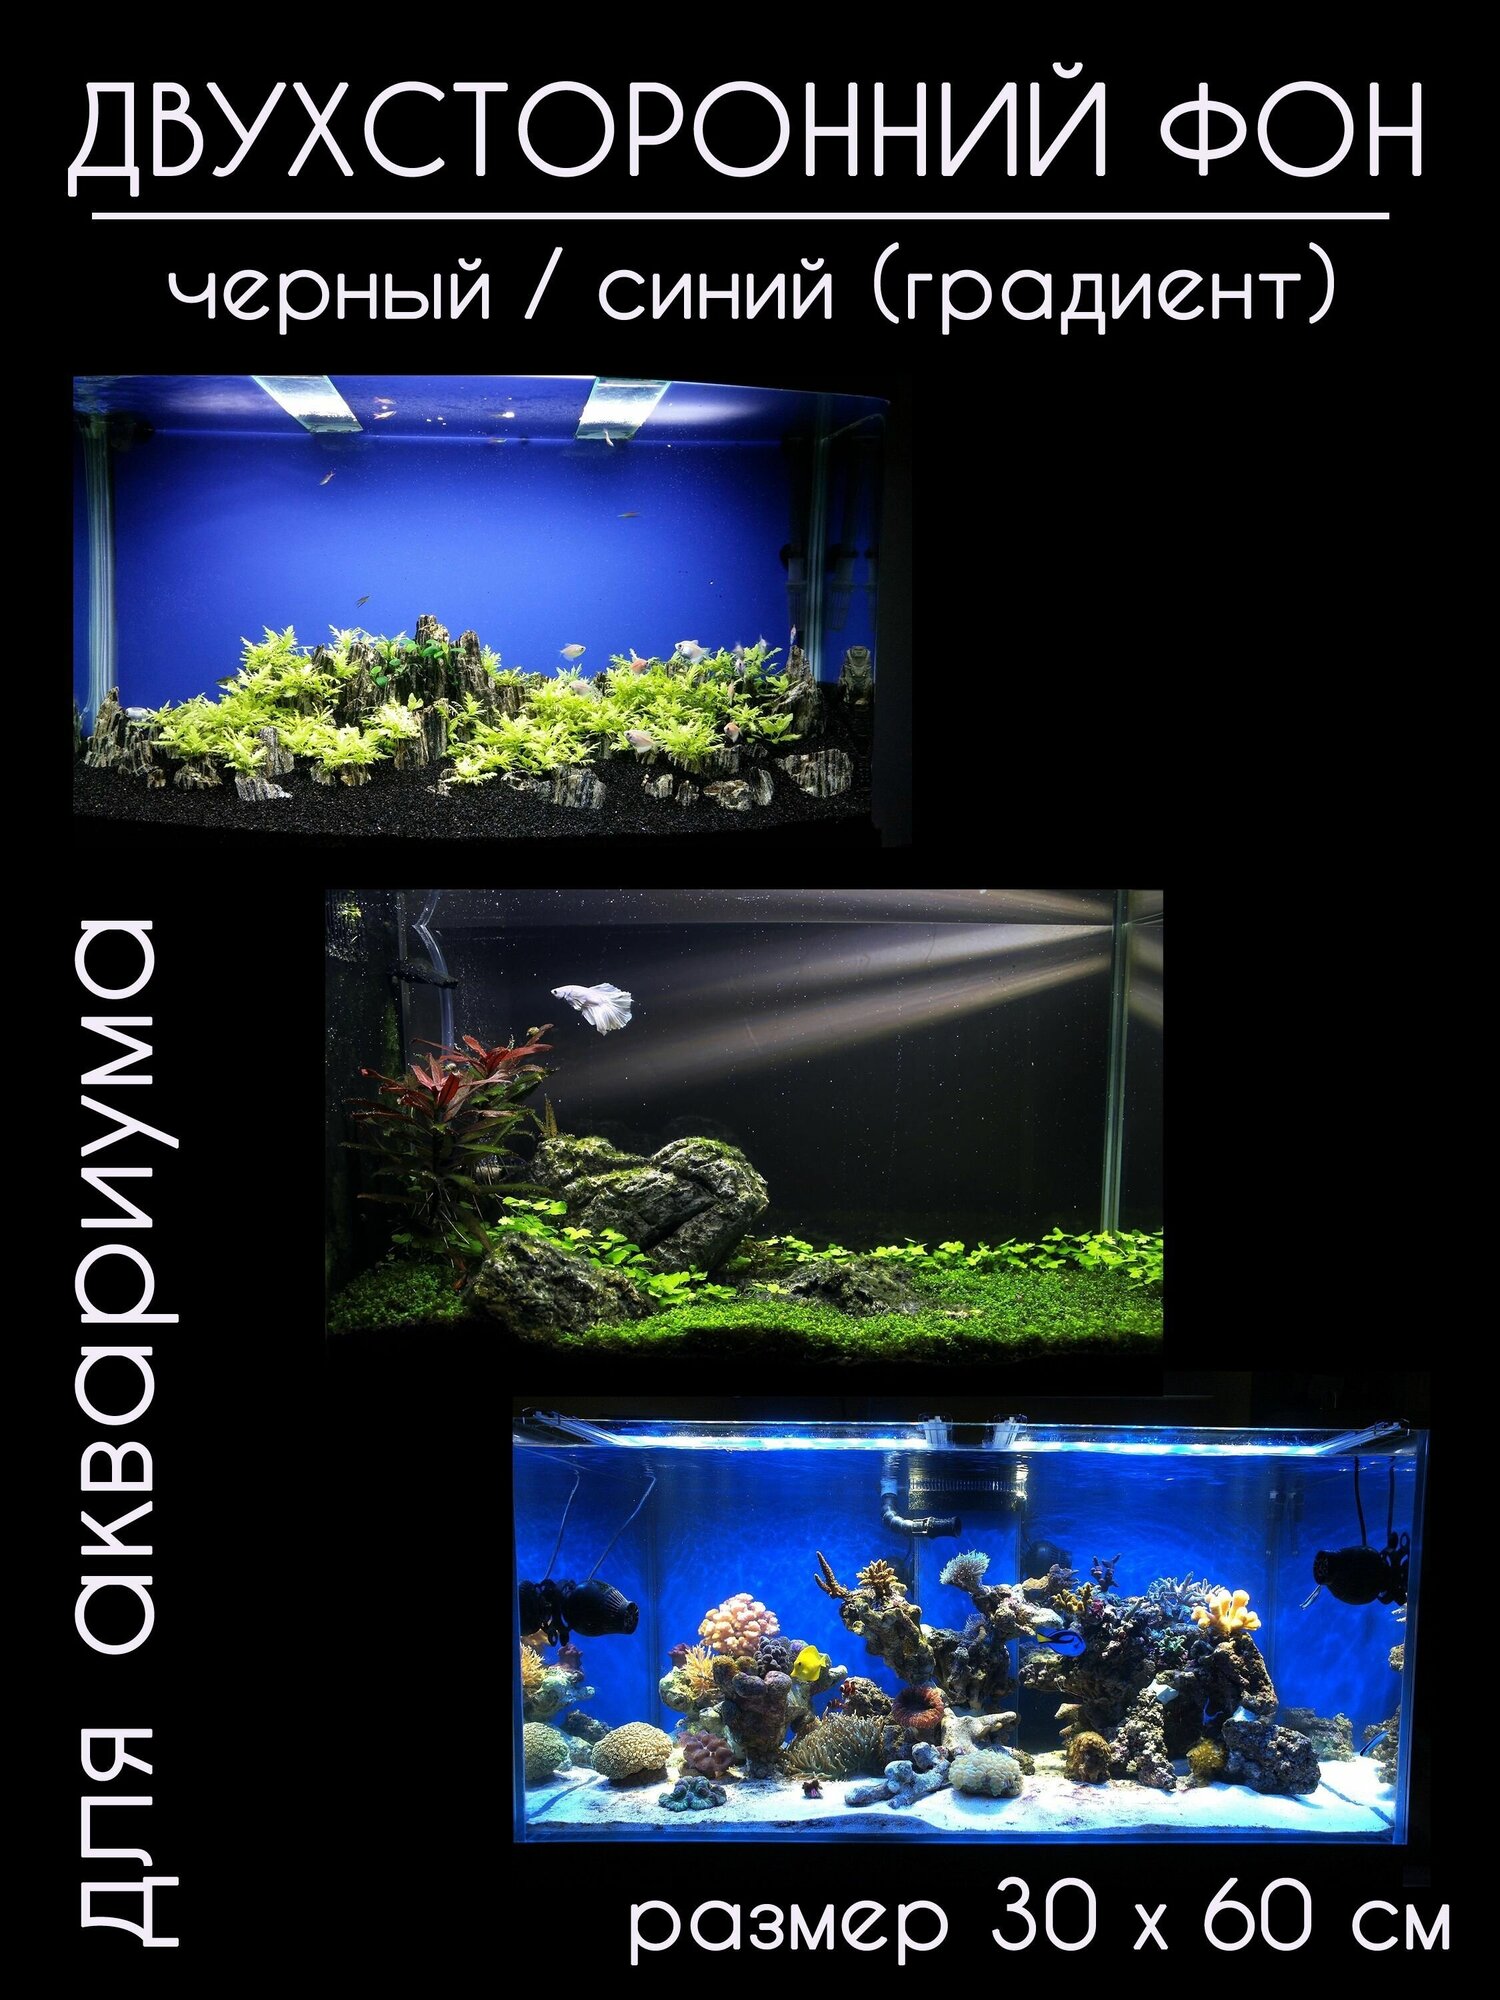 Фон для аквариумов и террариумов, двухсторонний, черный / тёмно-синий, однотонный с градиентом, высота 30 см длина 60 см. - фотография № 1